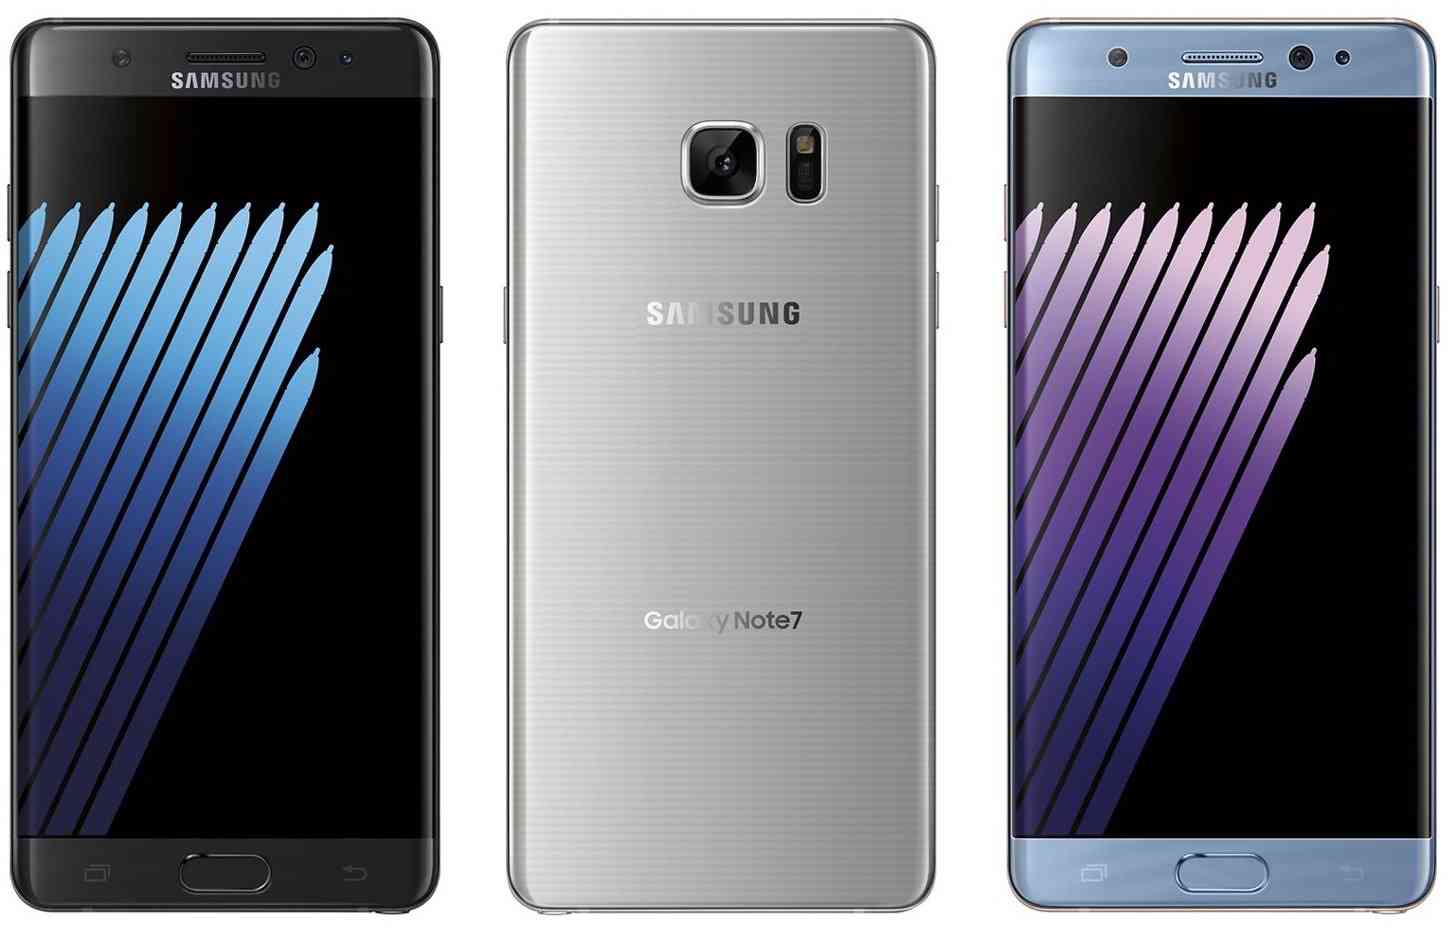 Samsung Galaxy Note 7 render